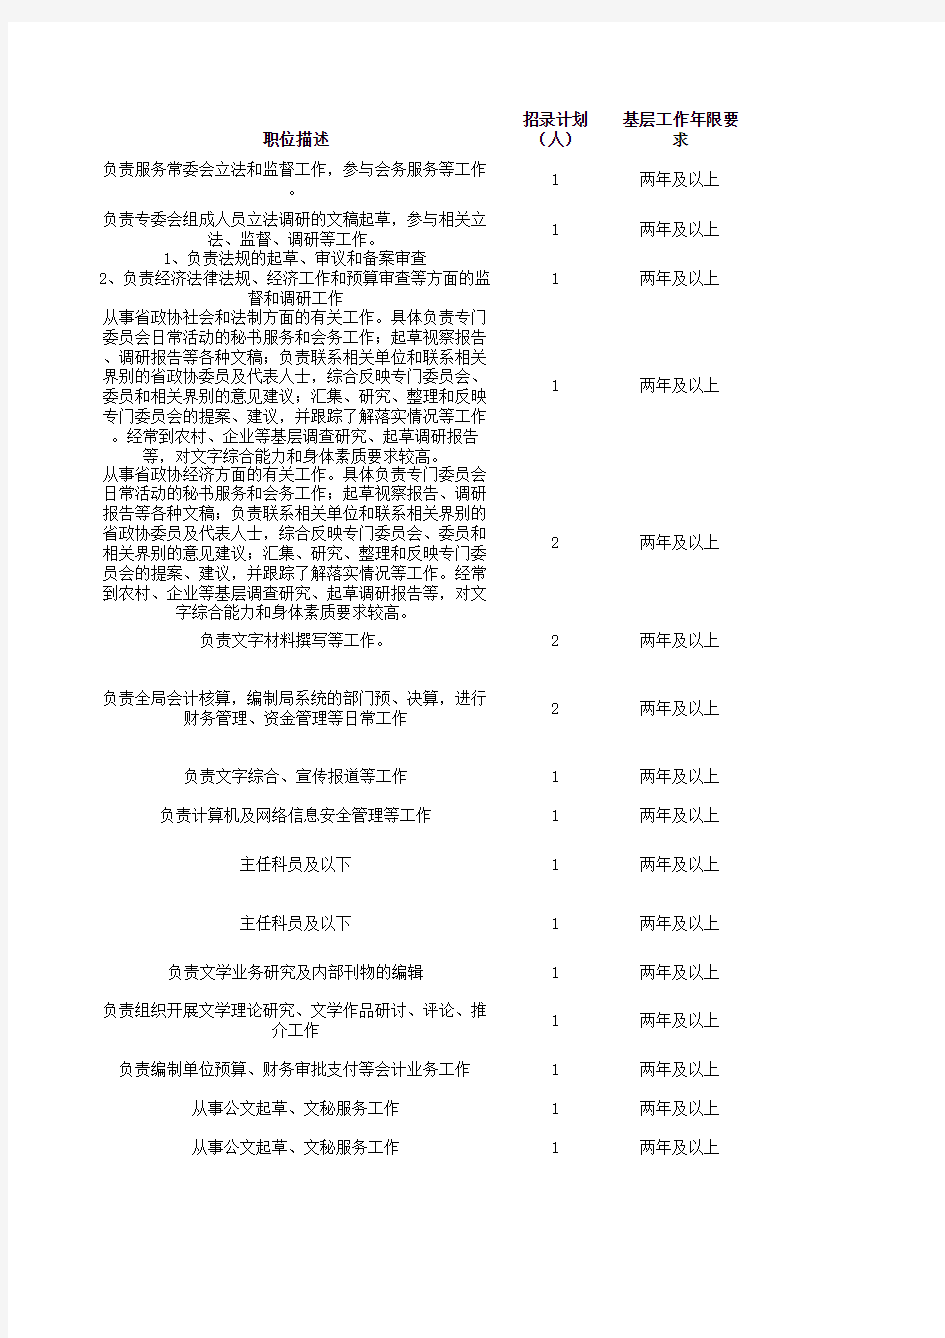 湖北省2014年度省市县乡考试录用公务员招考职位表大全